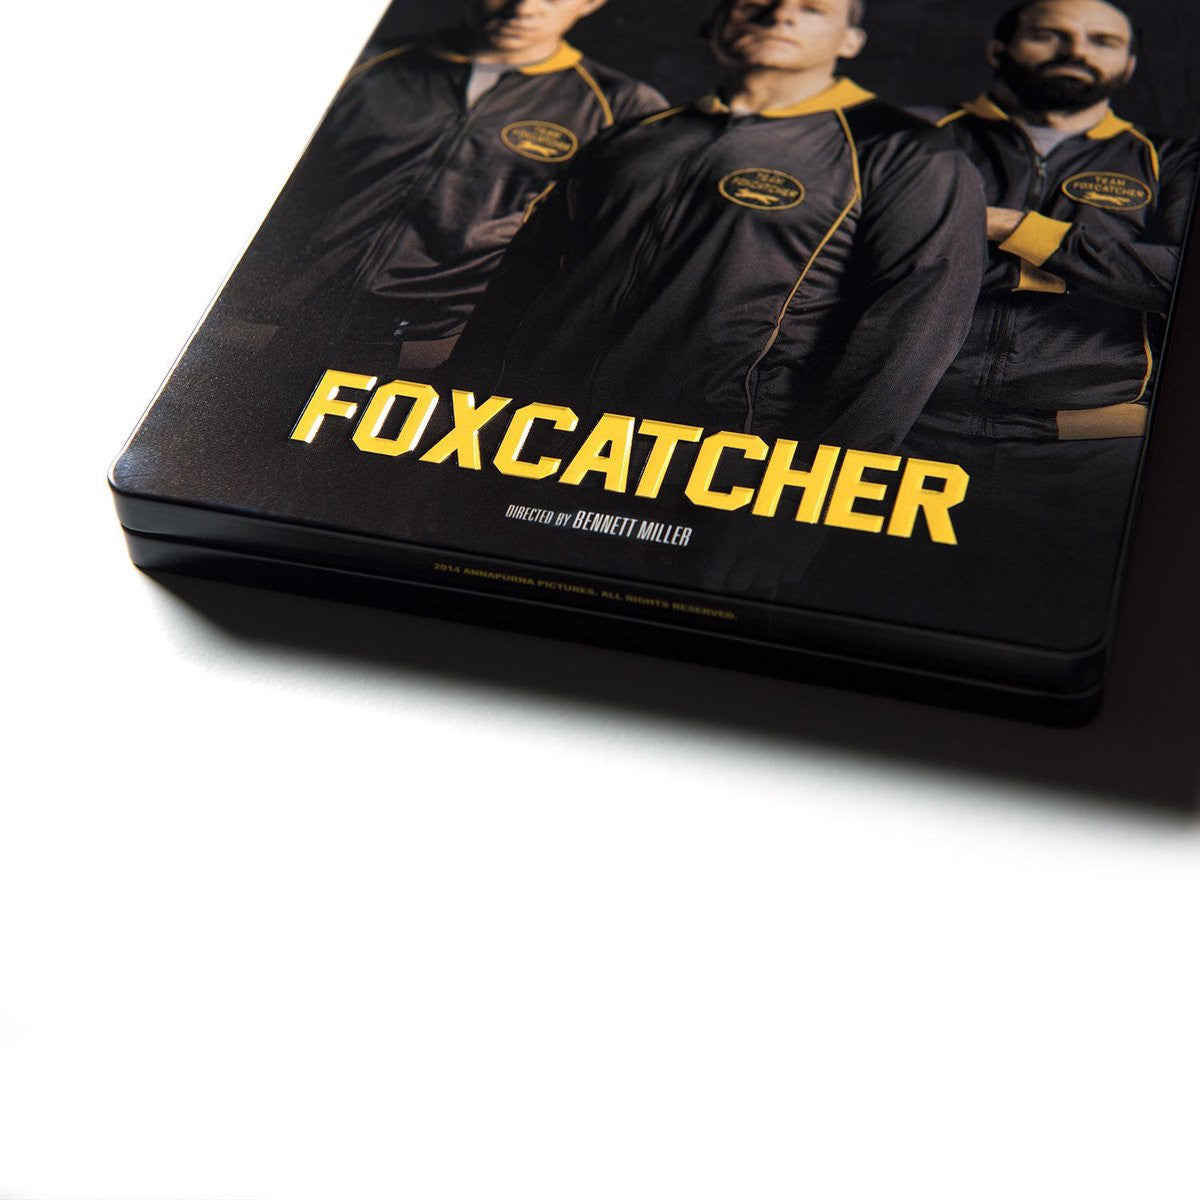 foxcatcher movie poster